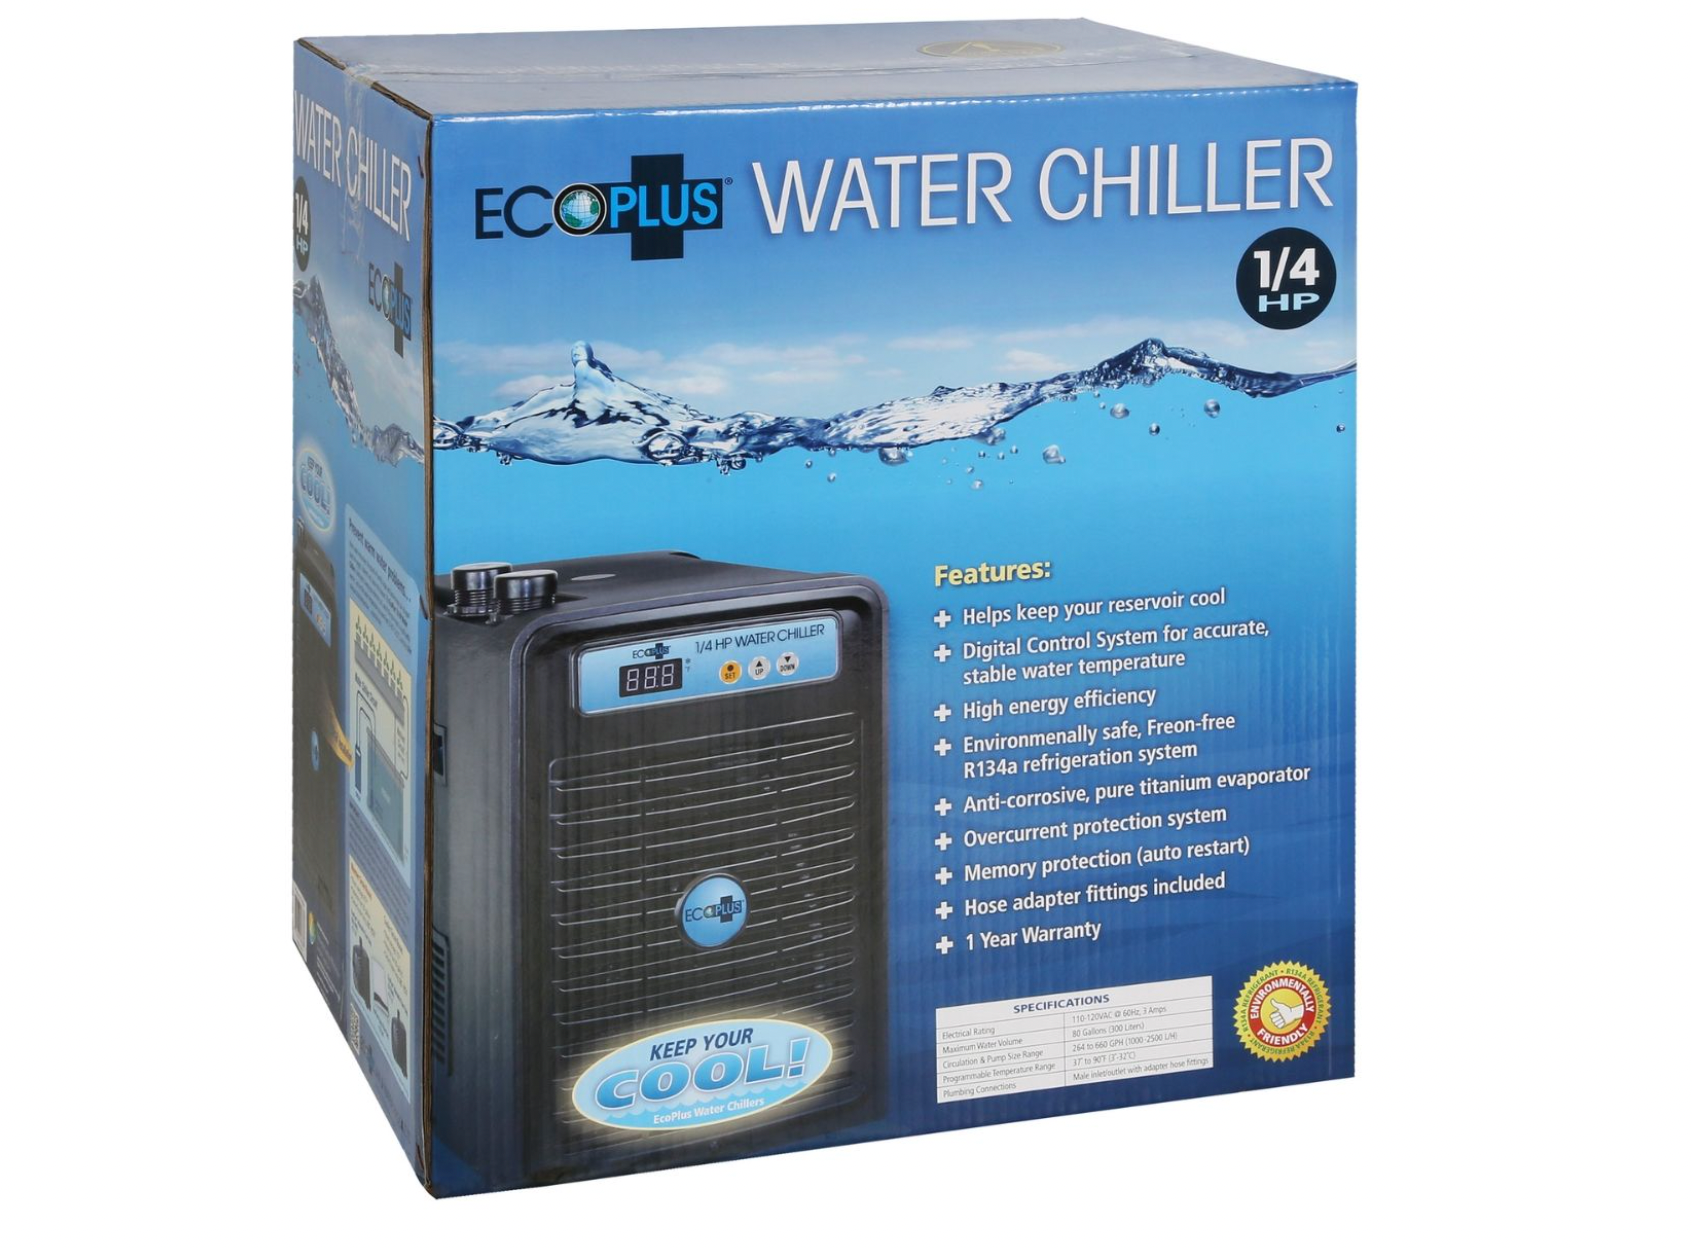 EcoPlus Water Chiller